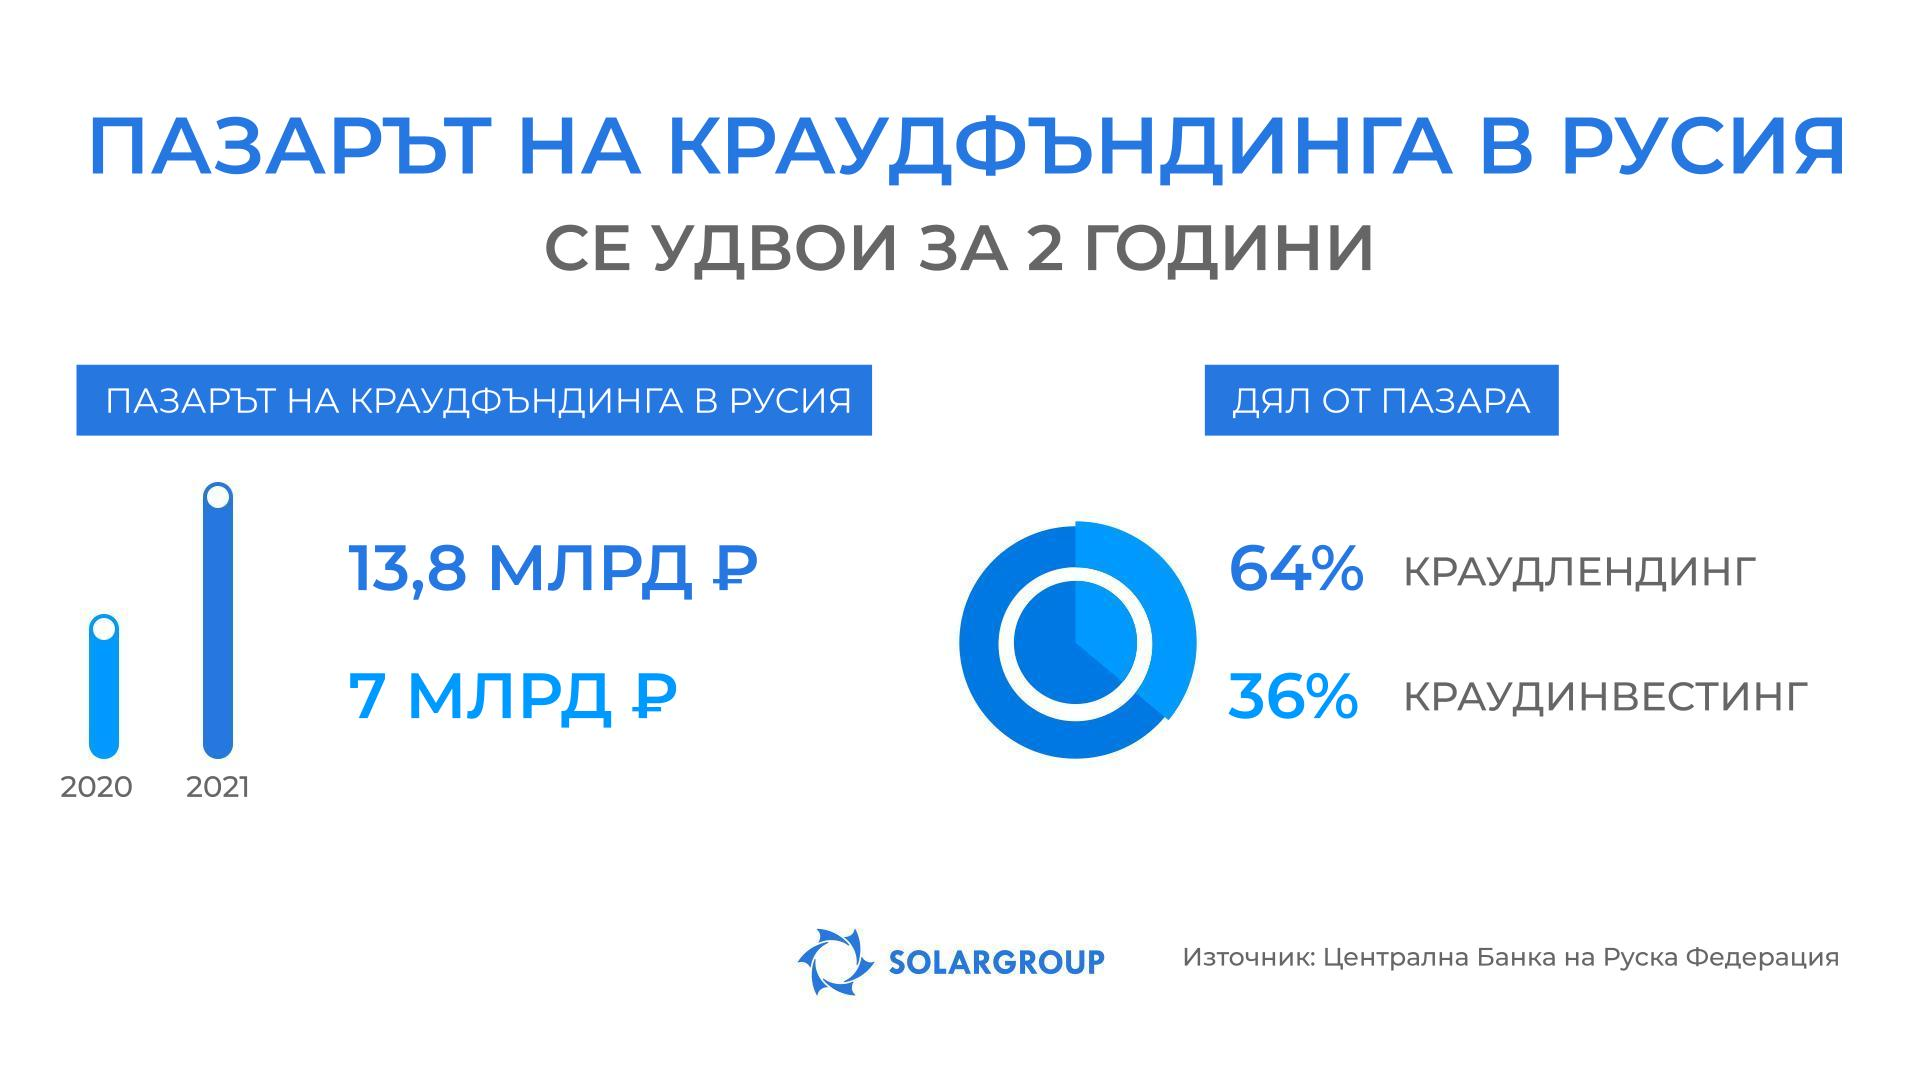 През 2021 година пазарът на краудфъндинга в Русия нарасна повече от 2 пъти!